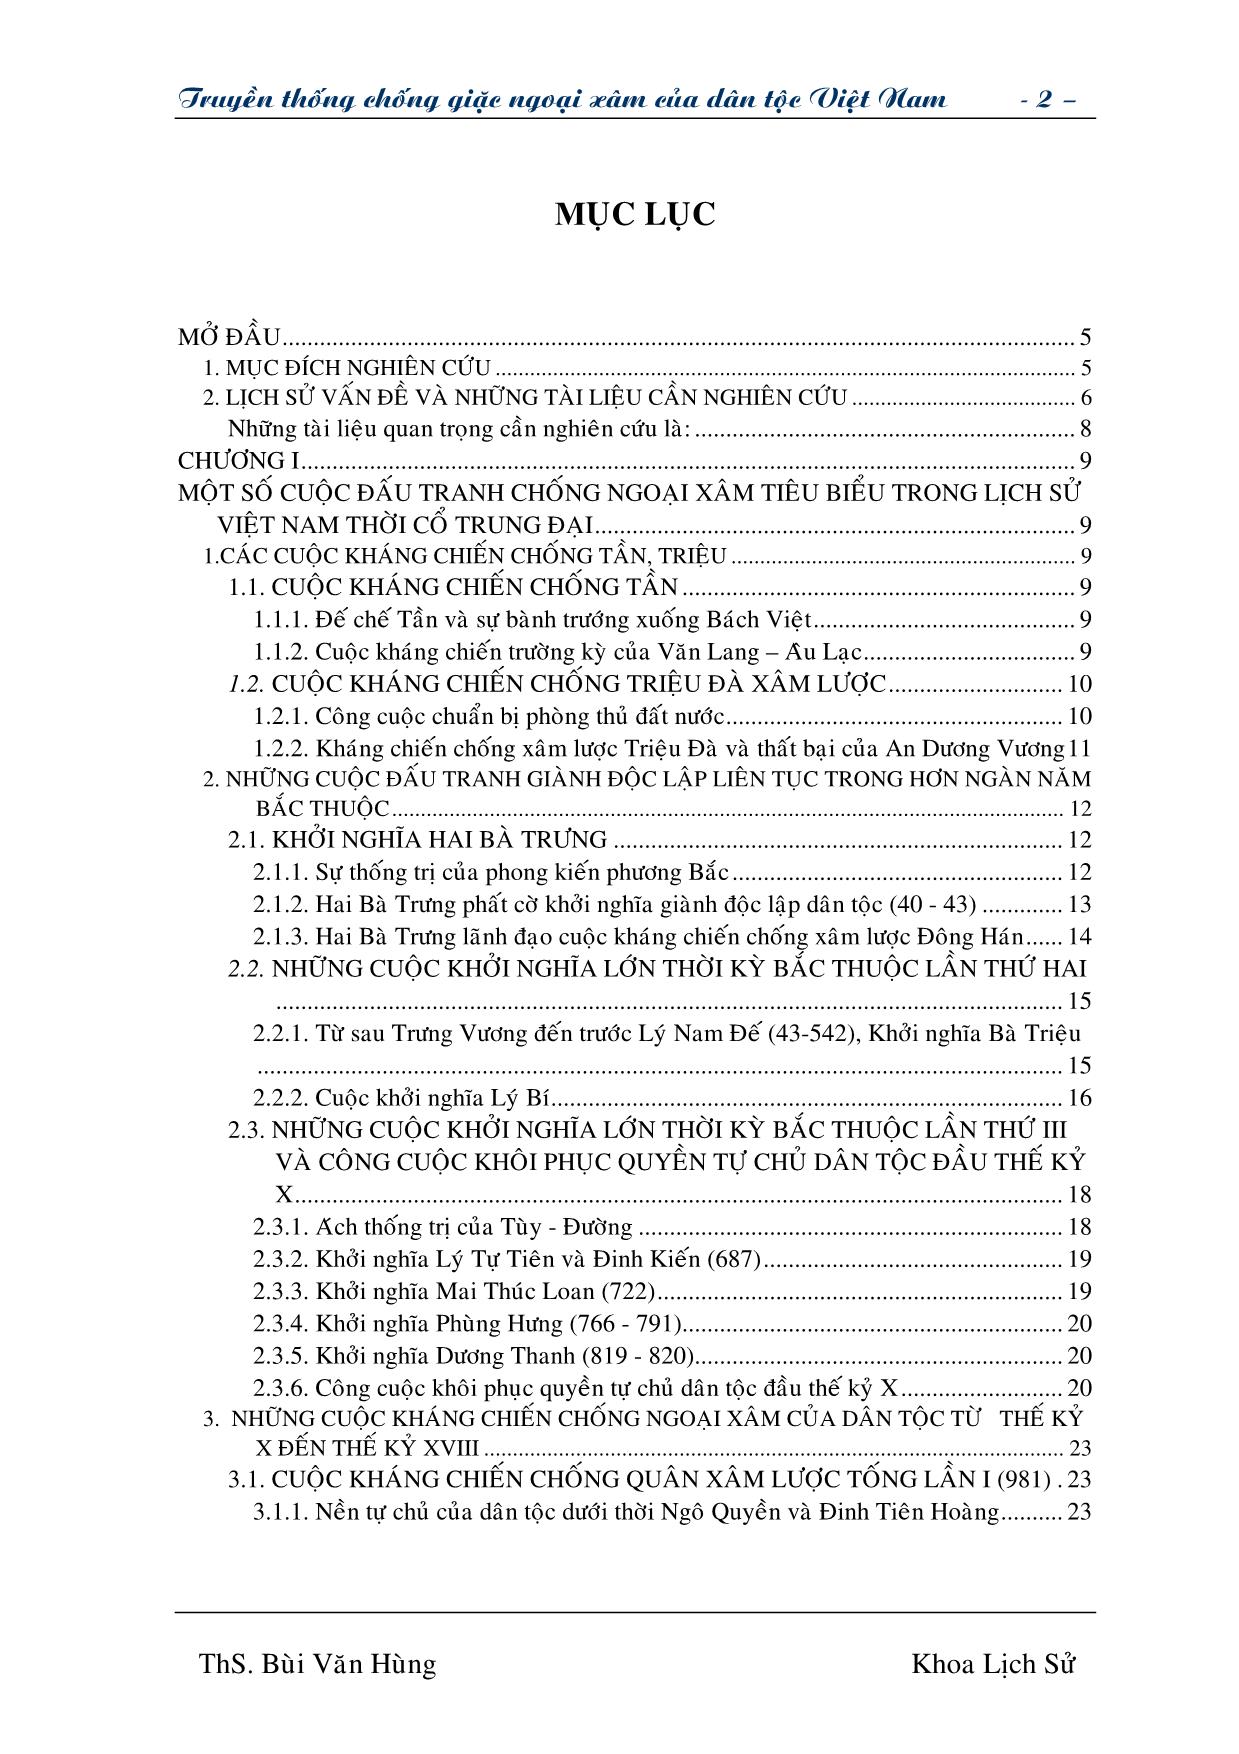 Giáo trình Truyền thống chống giặc ngoại xâm của dân tộc Việt Nam (Phần 1) trang 2